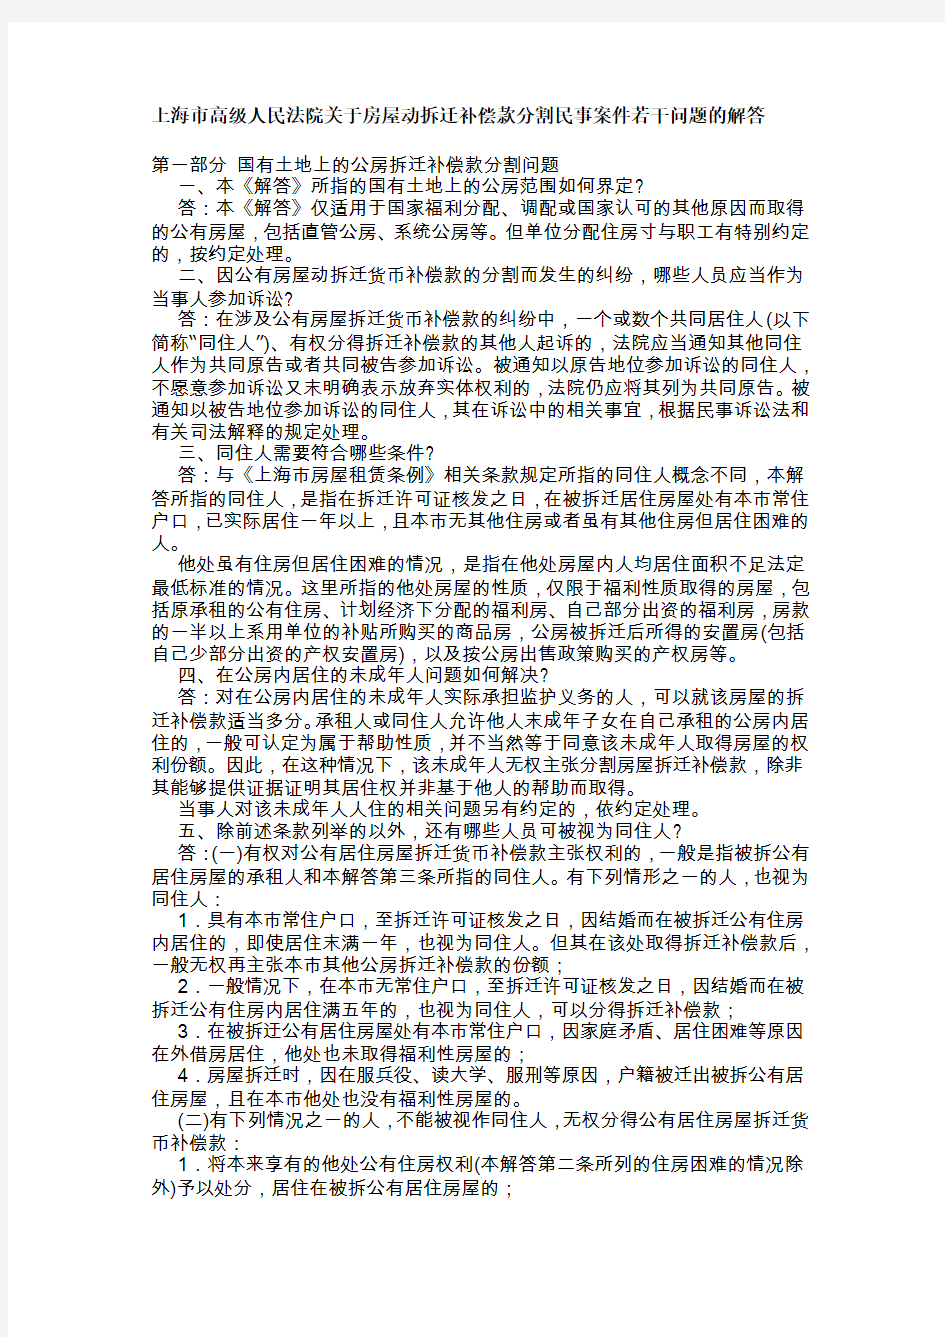 上海市高级人民法院关于房屋动拆迁补偿款分割民事案件若干问题的解答